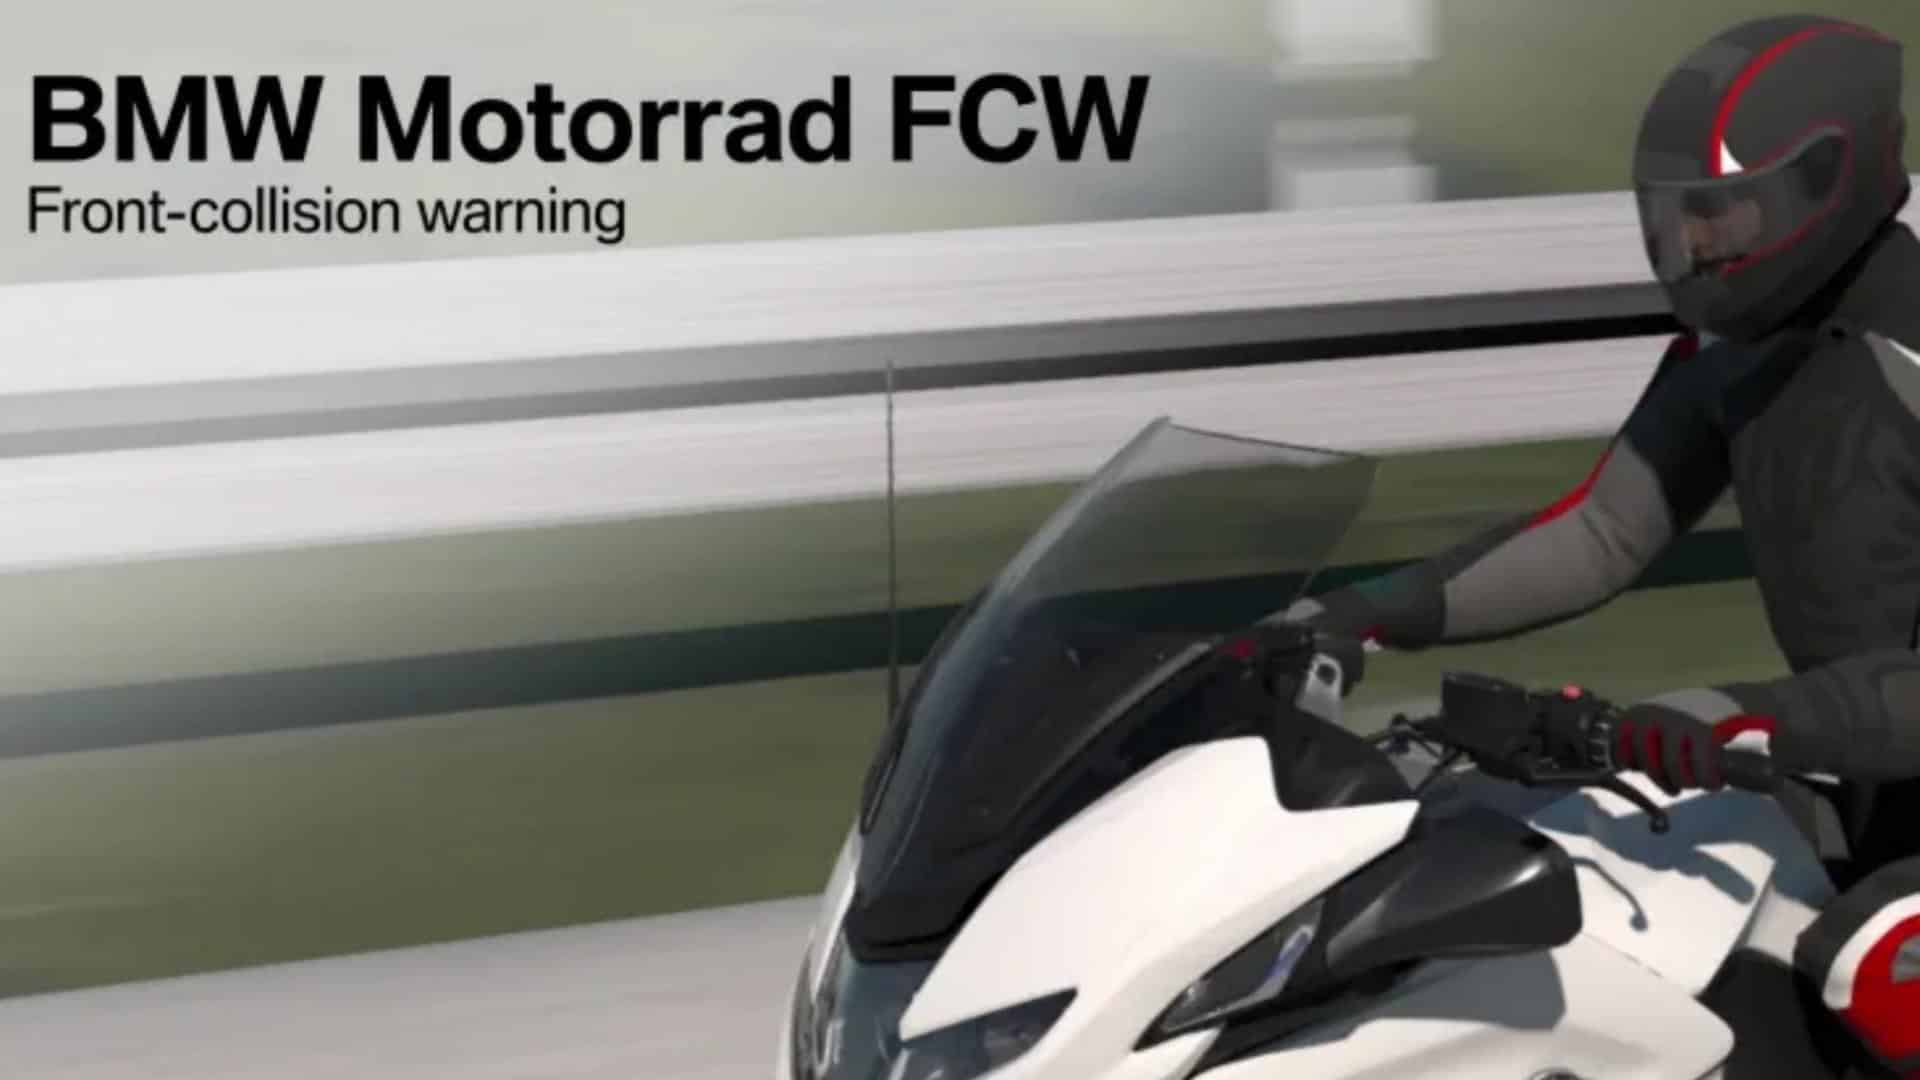 BMW sistema de advertencia de colisión frontal FCW